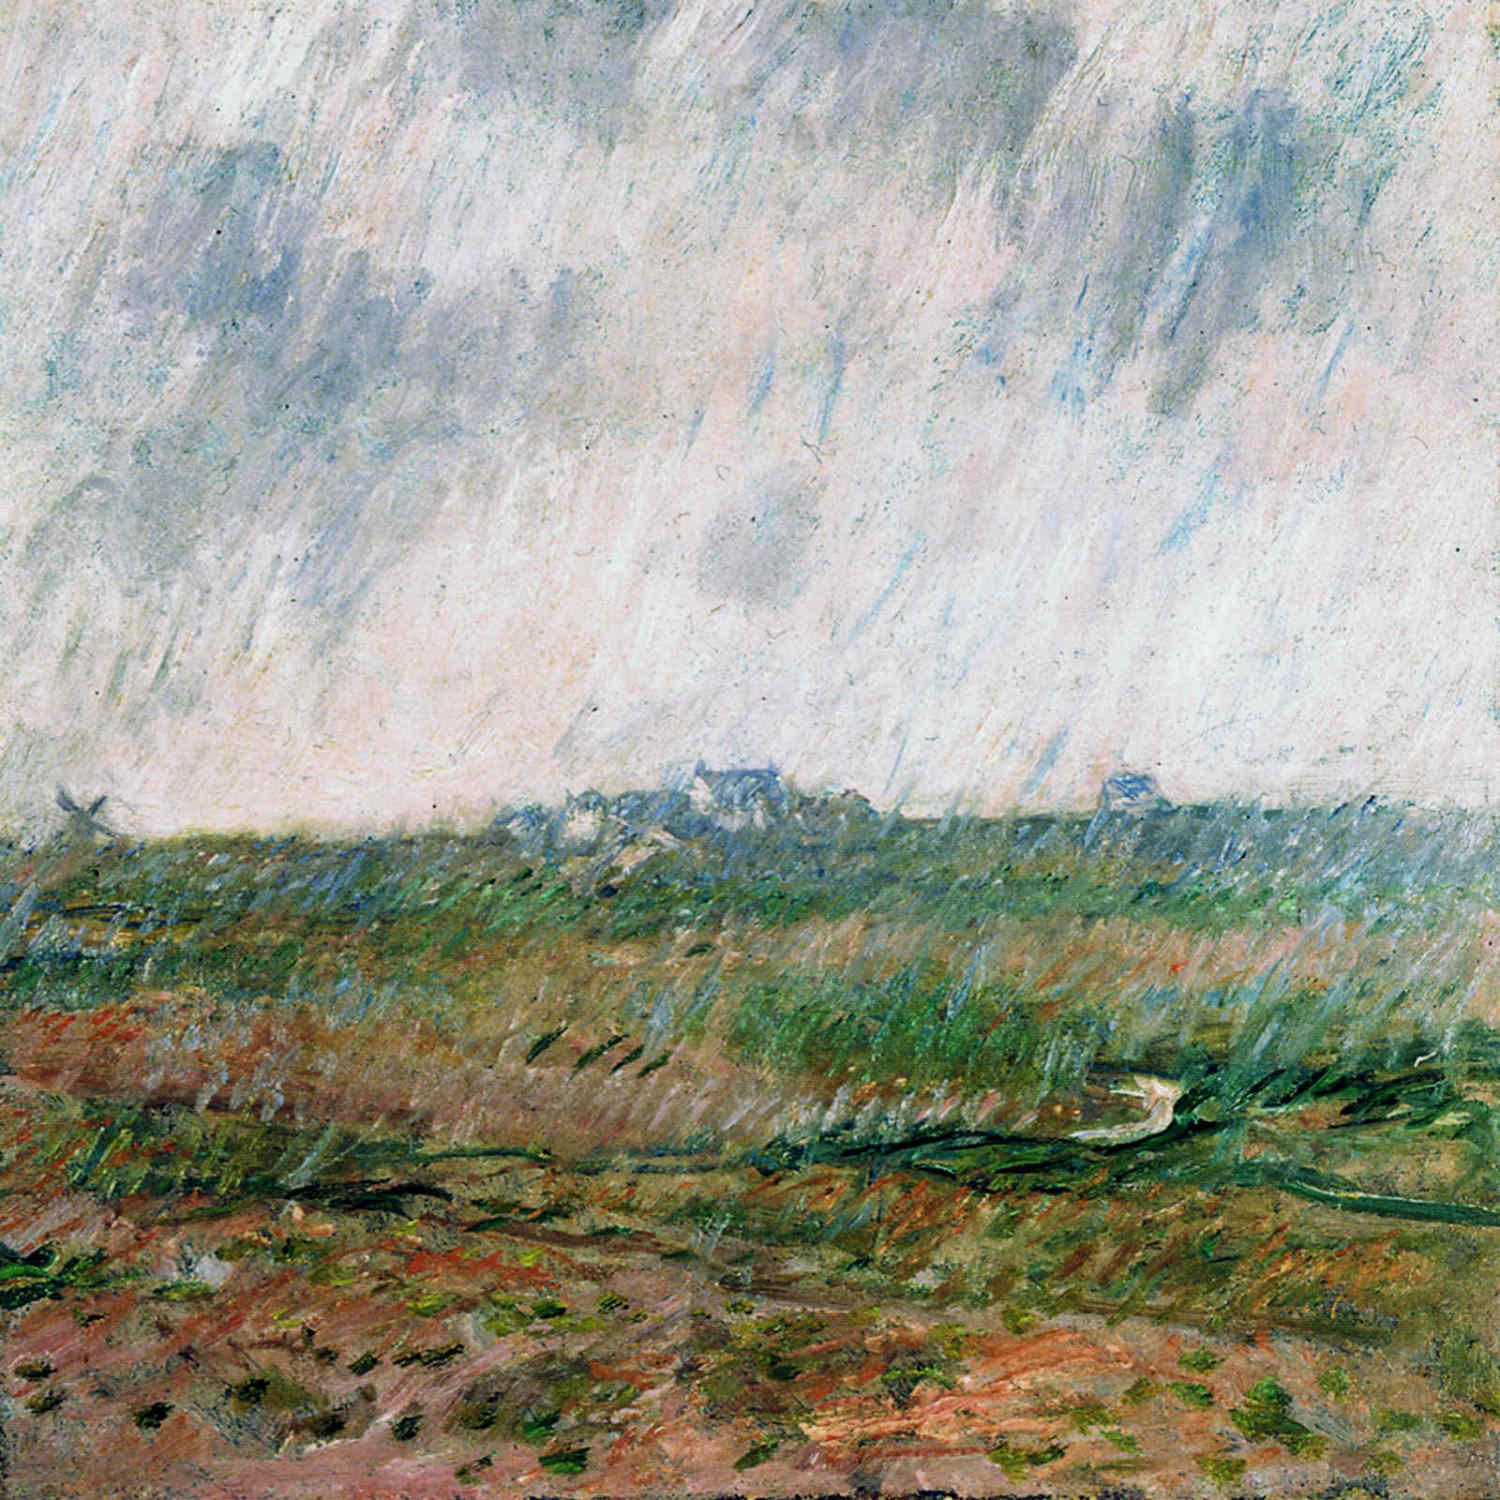 Клод Моне. "Дождь в Бель-Иль". 1886.